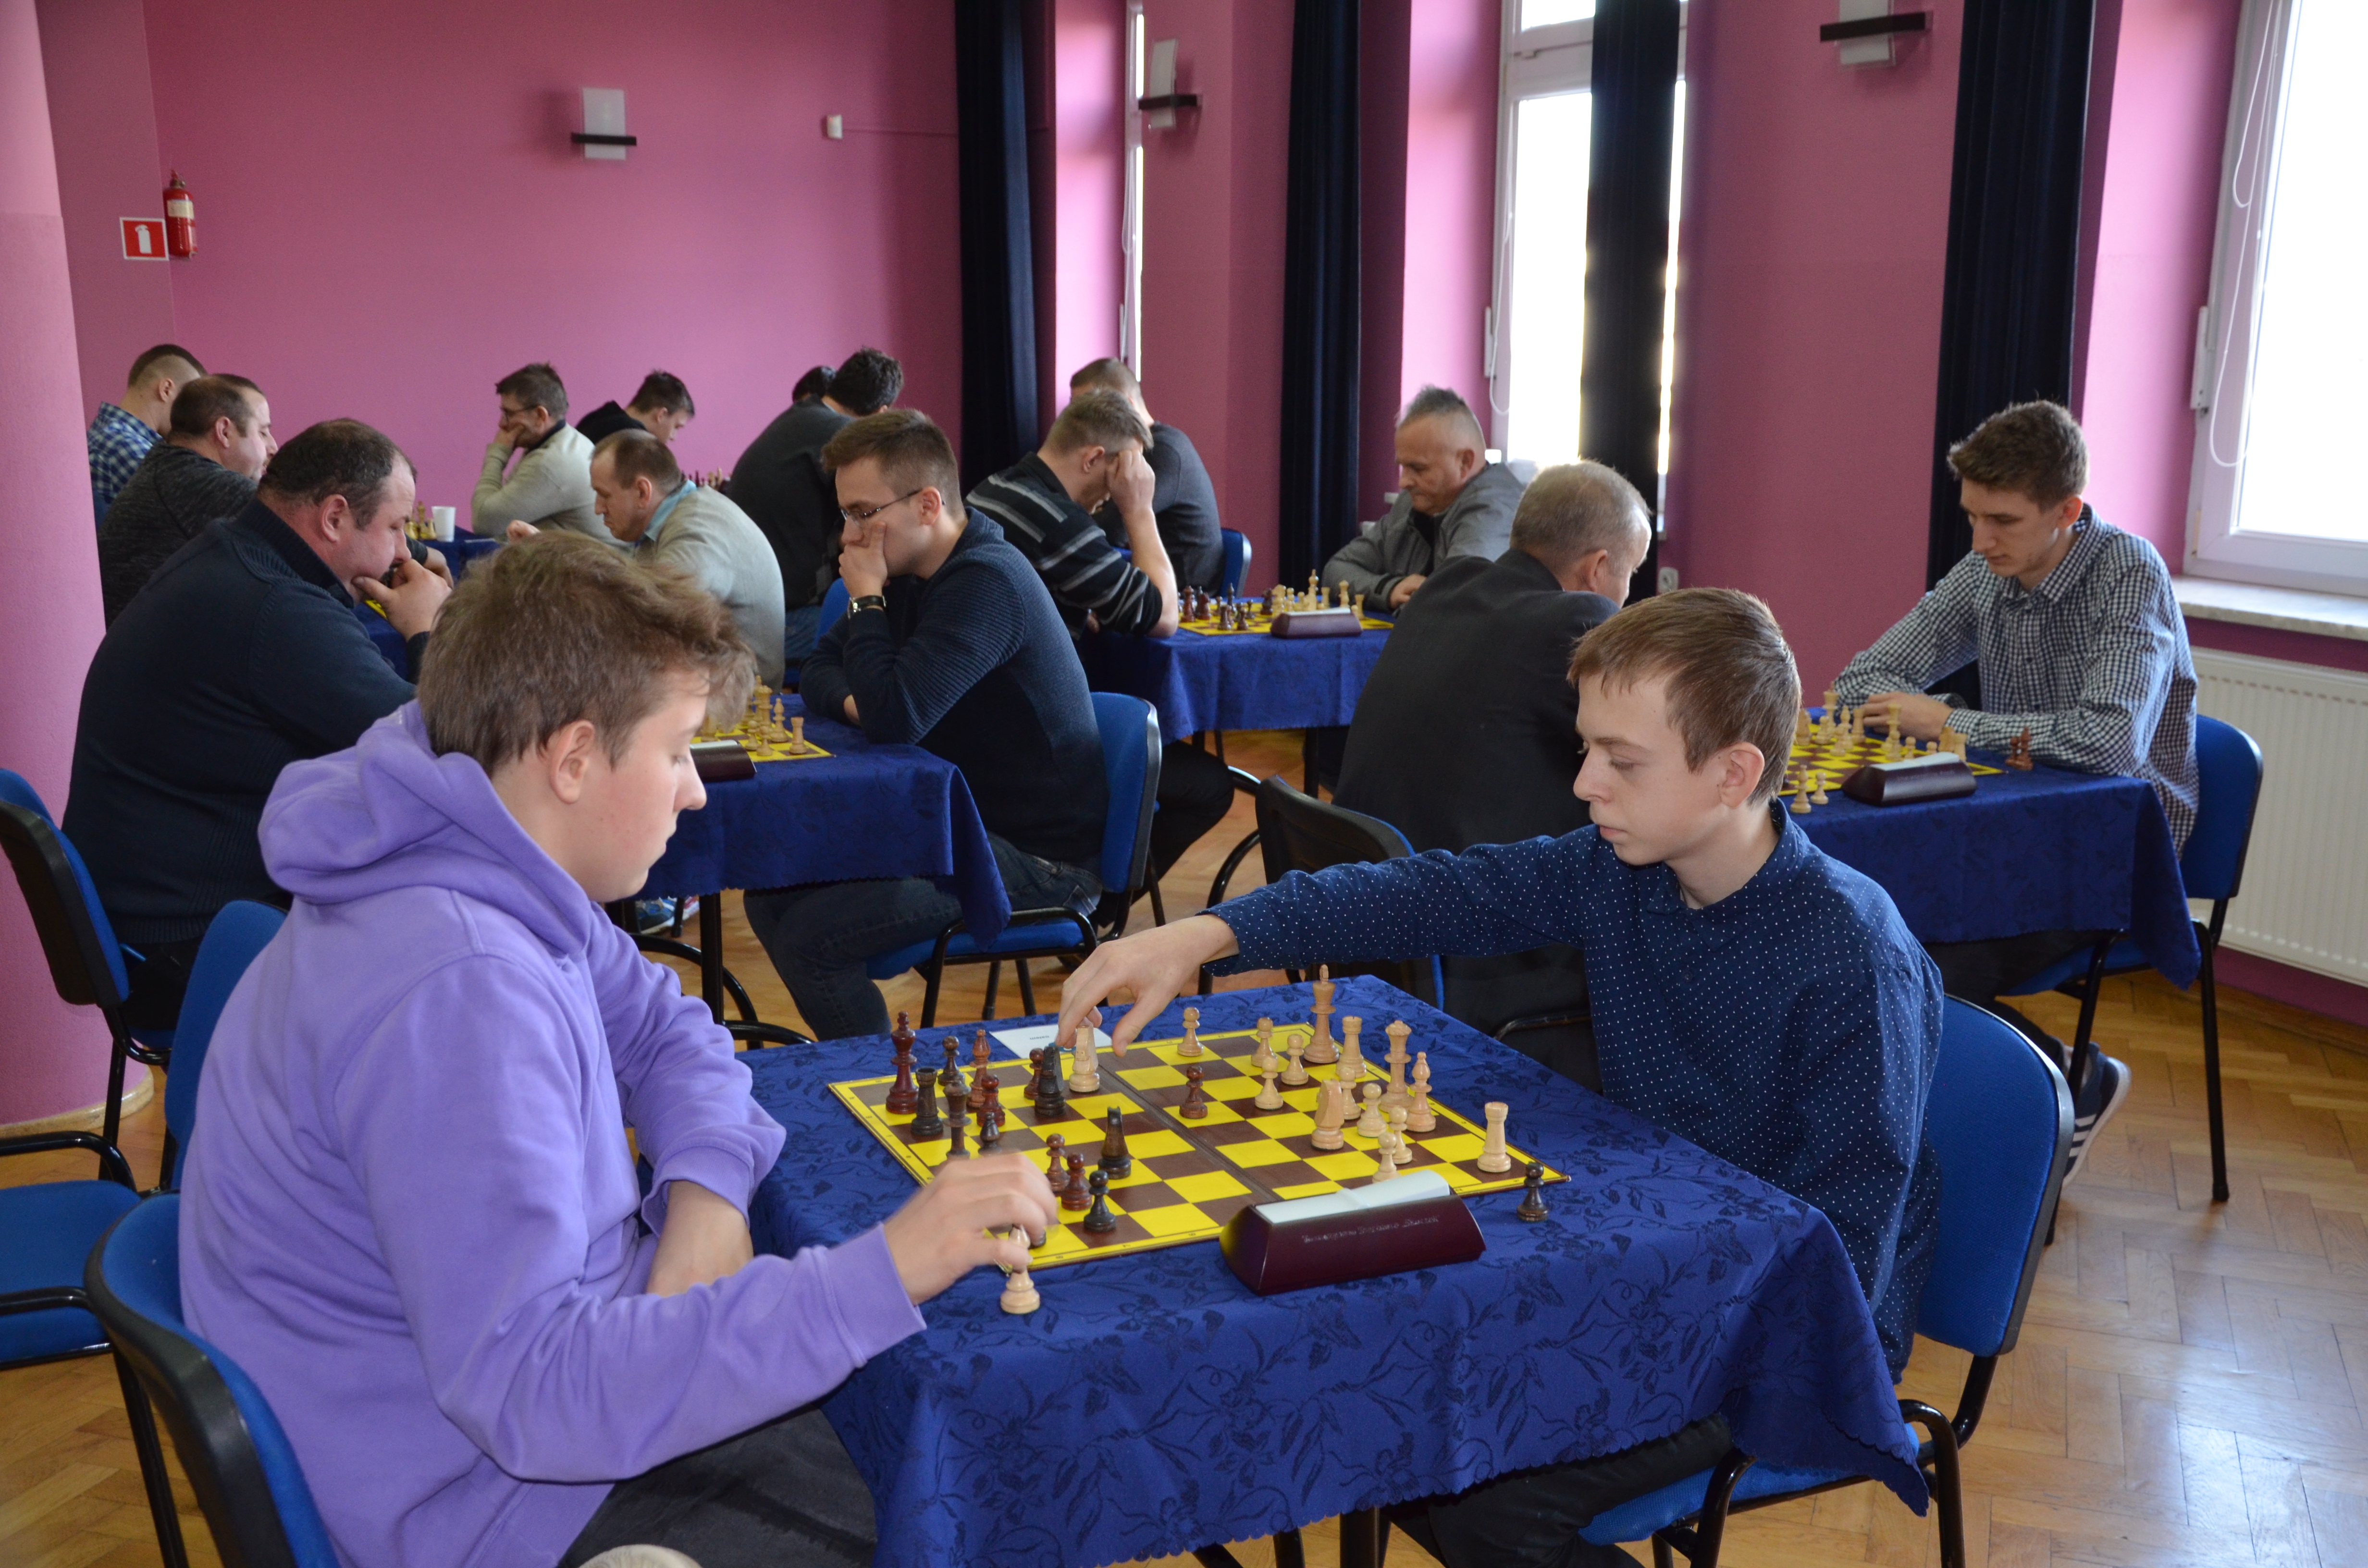 XV Otwarty Turniej Szachowy w Cmolasie został rozegrany w sobotę, 2 marca [ZDJĘCIA] - Zdjęcie główne